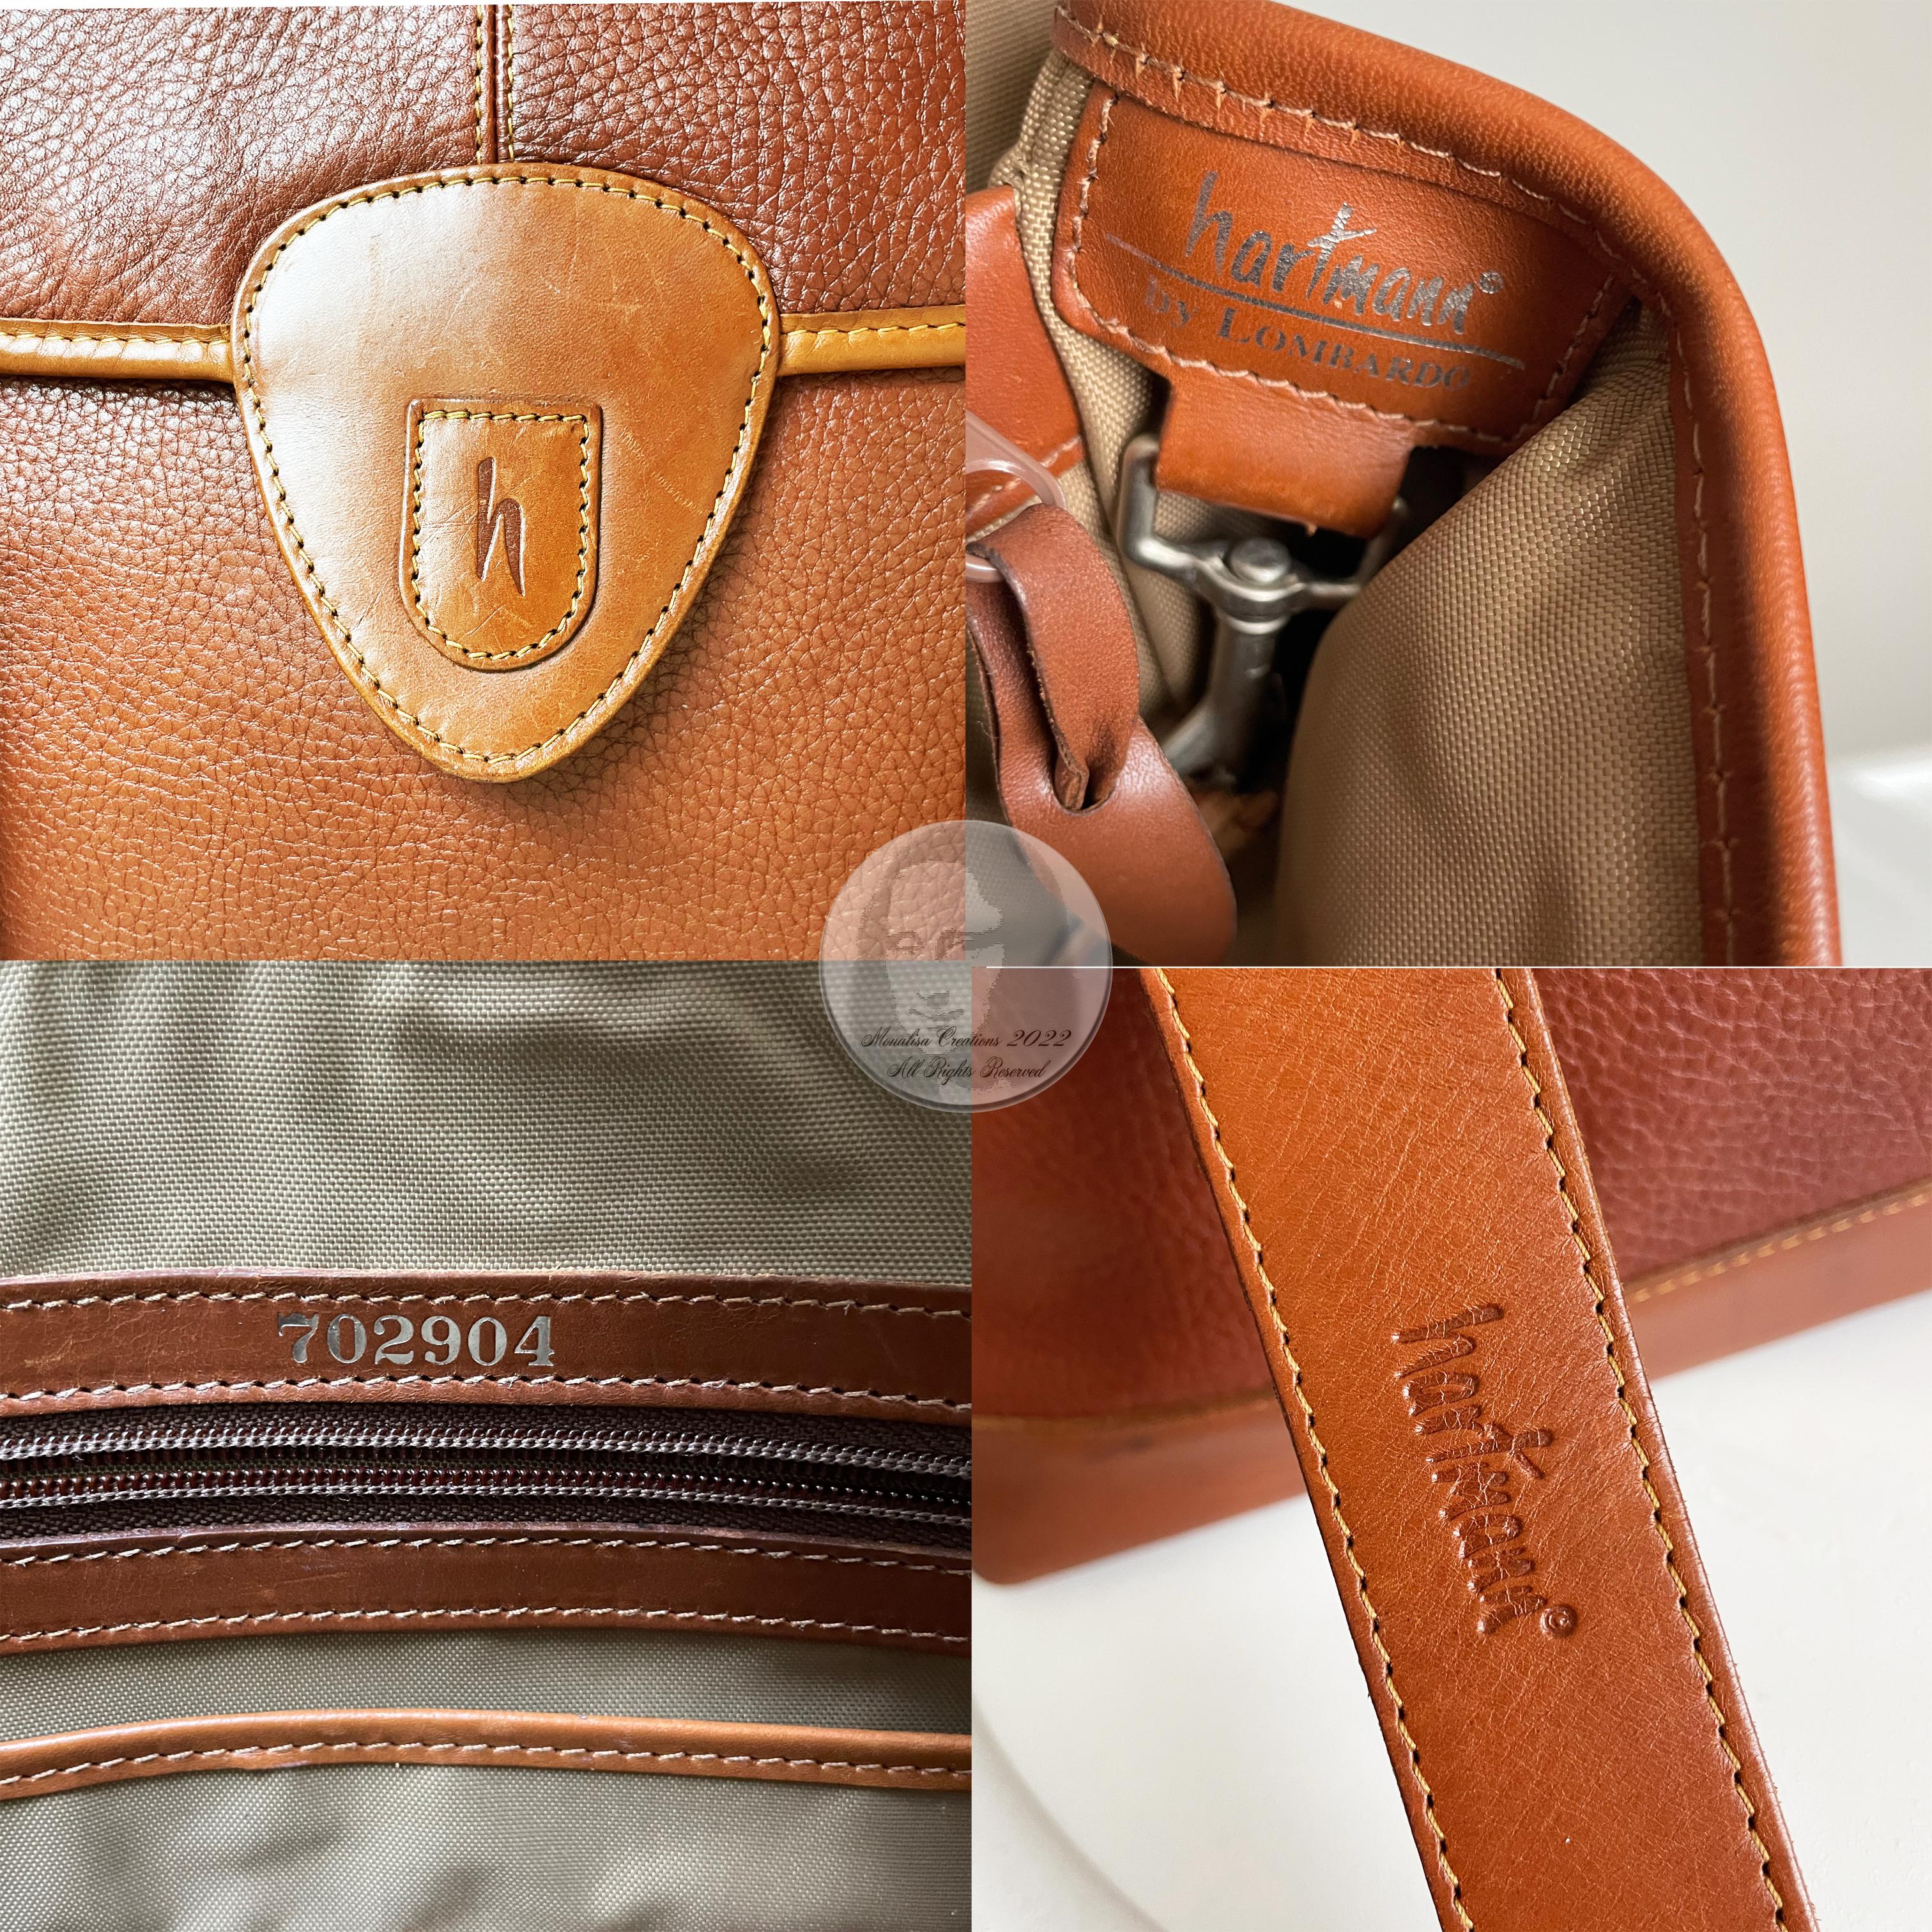 Hartmann Business Bag Briefcase Computer or Shoulder Bag British Tan Leather 11